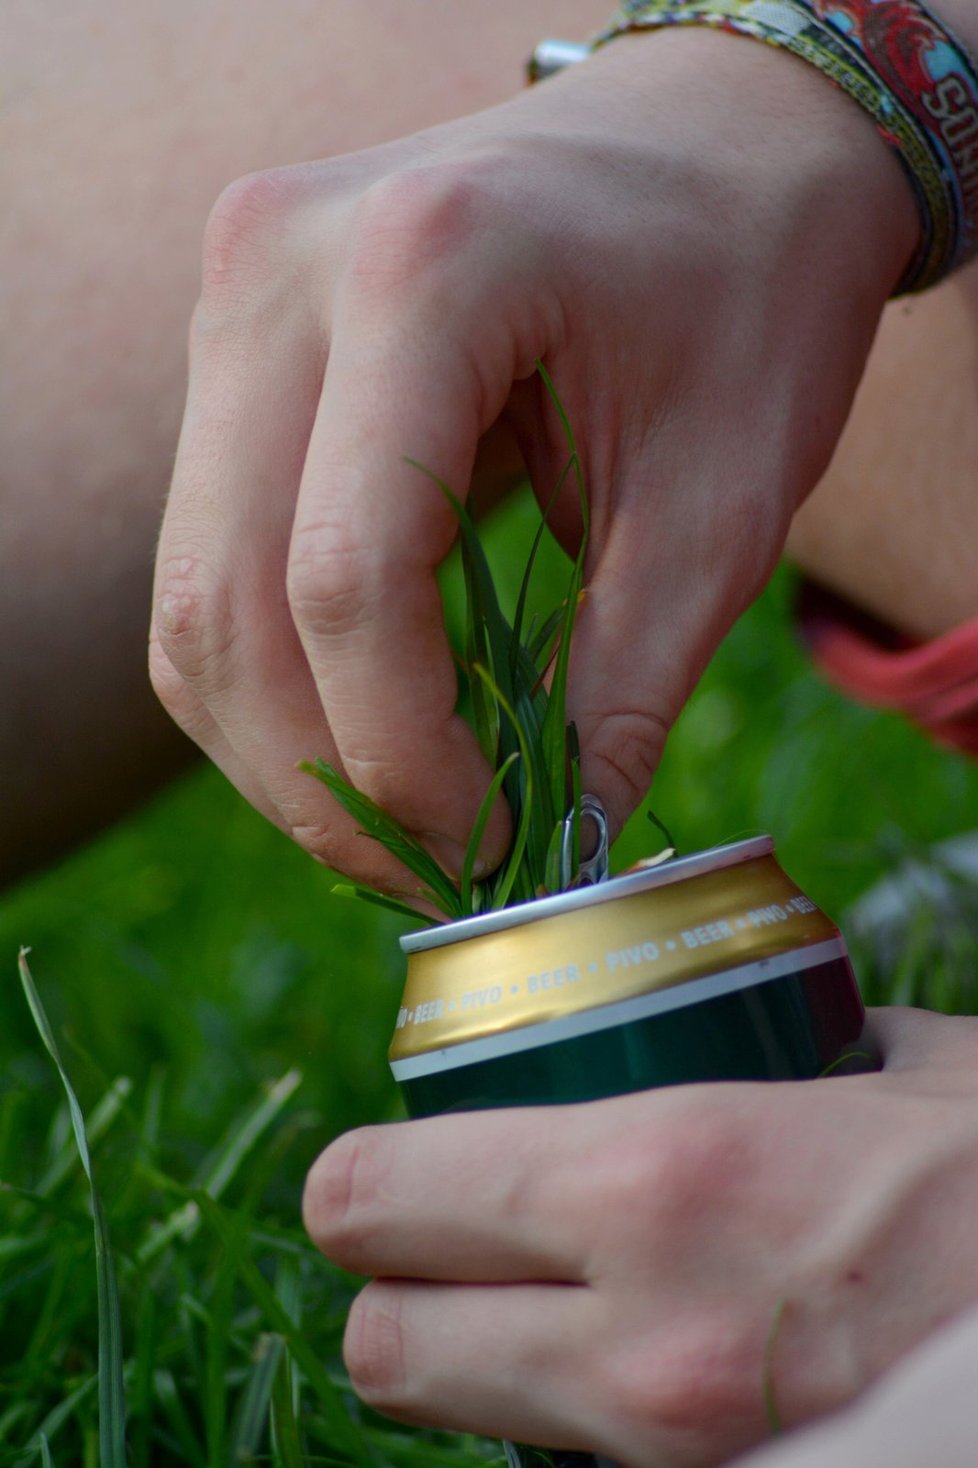 Hraní si s trávou a prázdnou plechovkou od piva